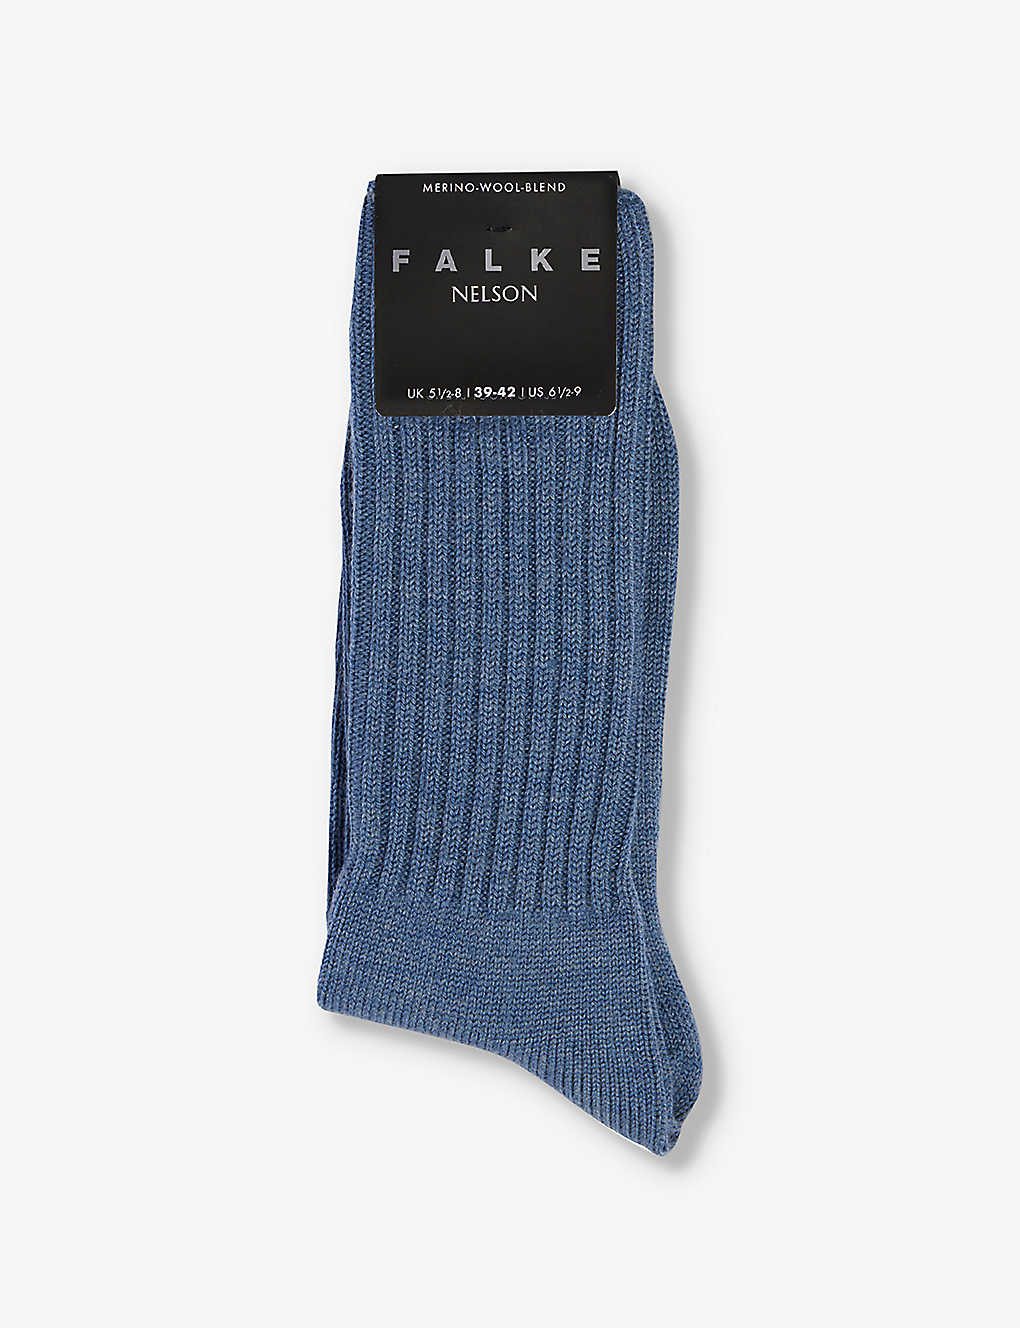 Falke Mens Light Denim Nelson Wool-blend Socks